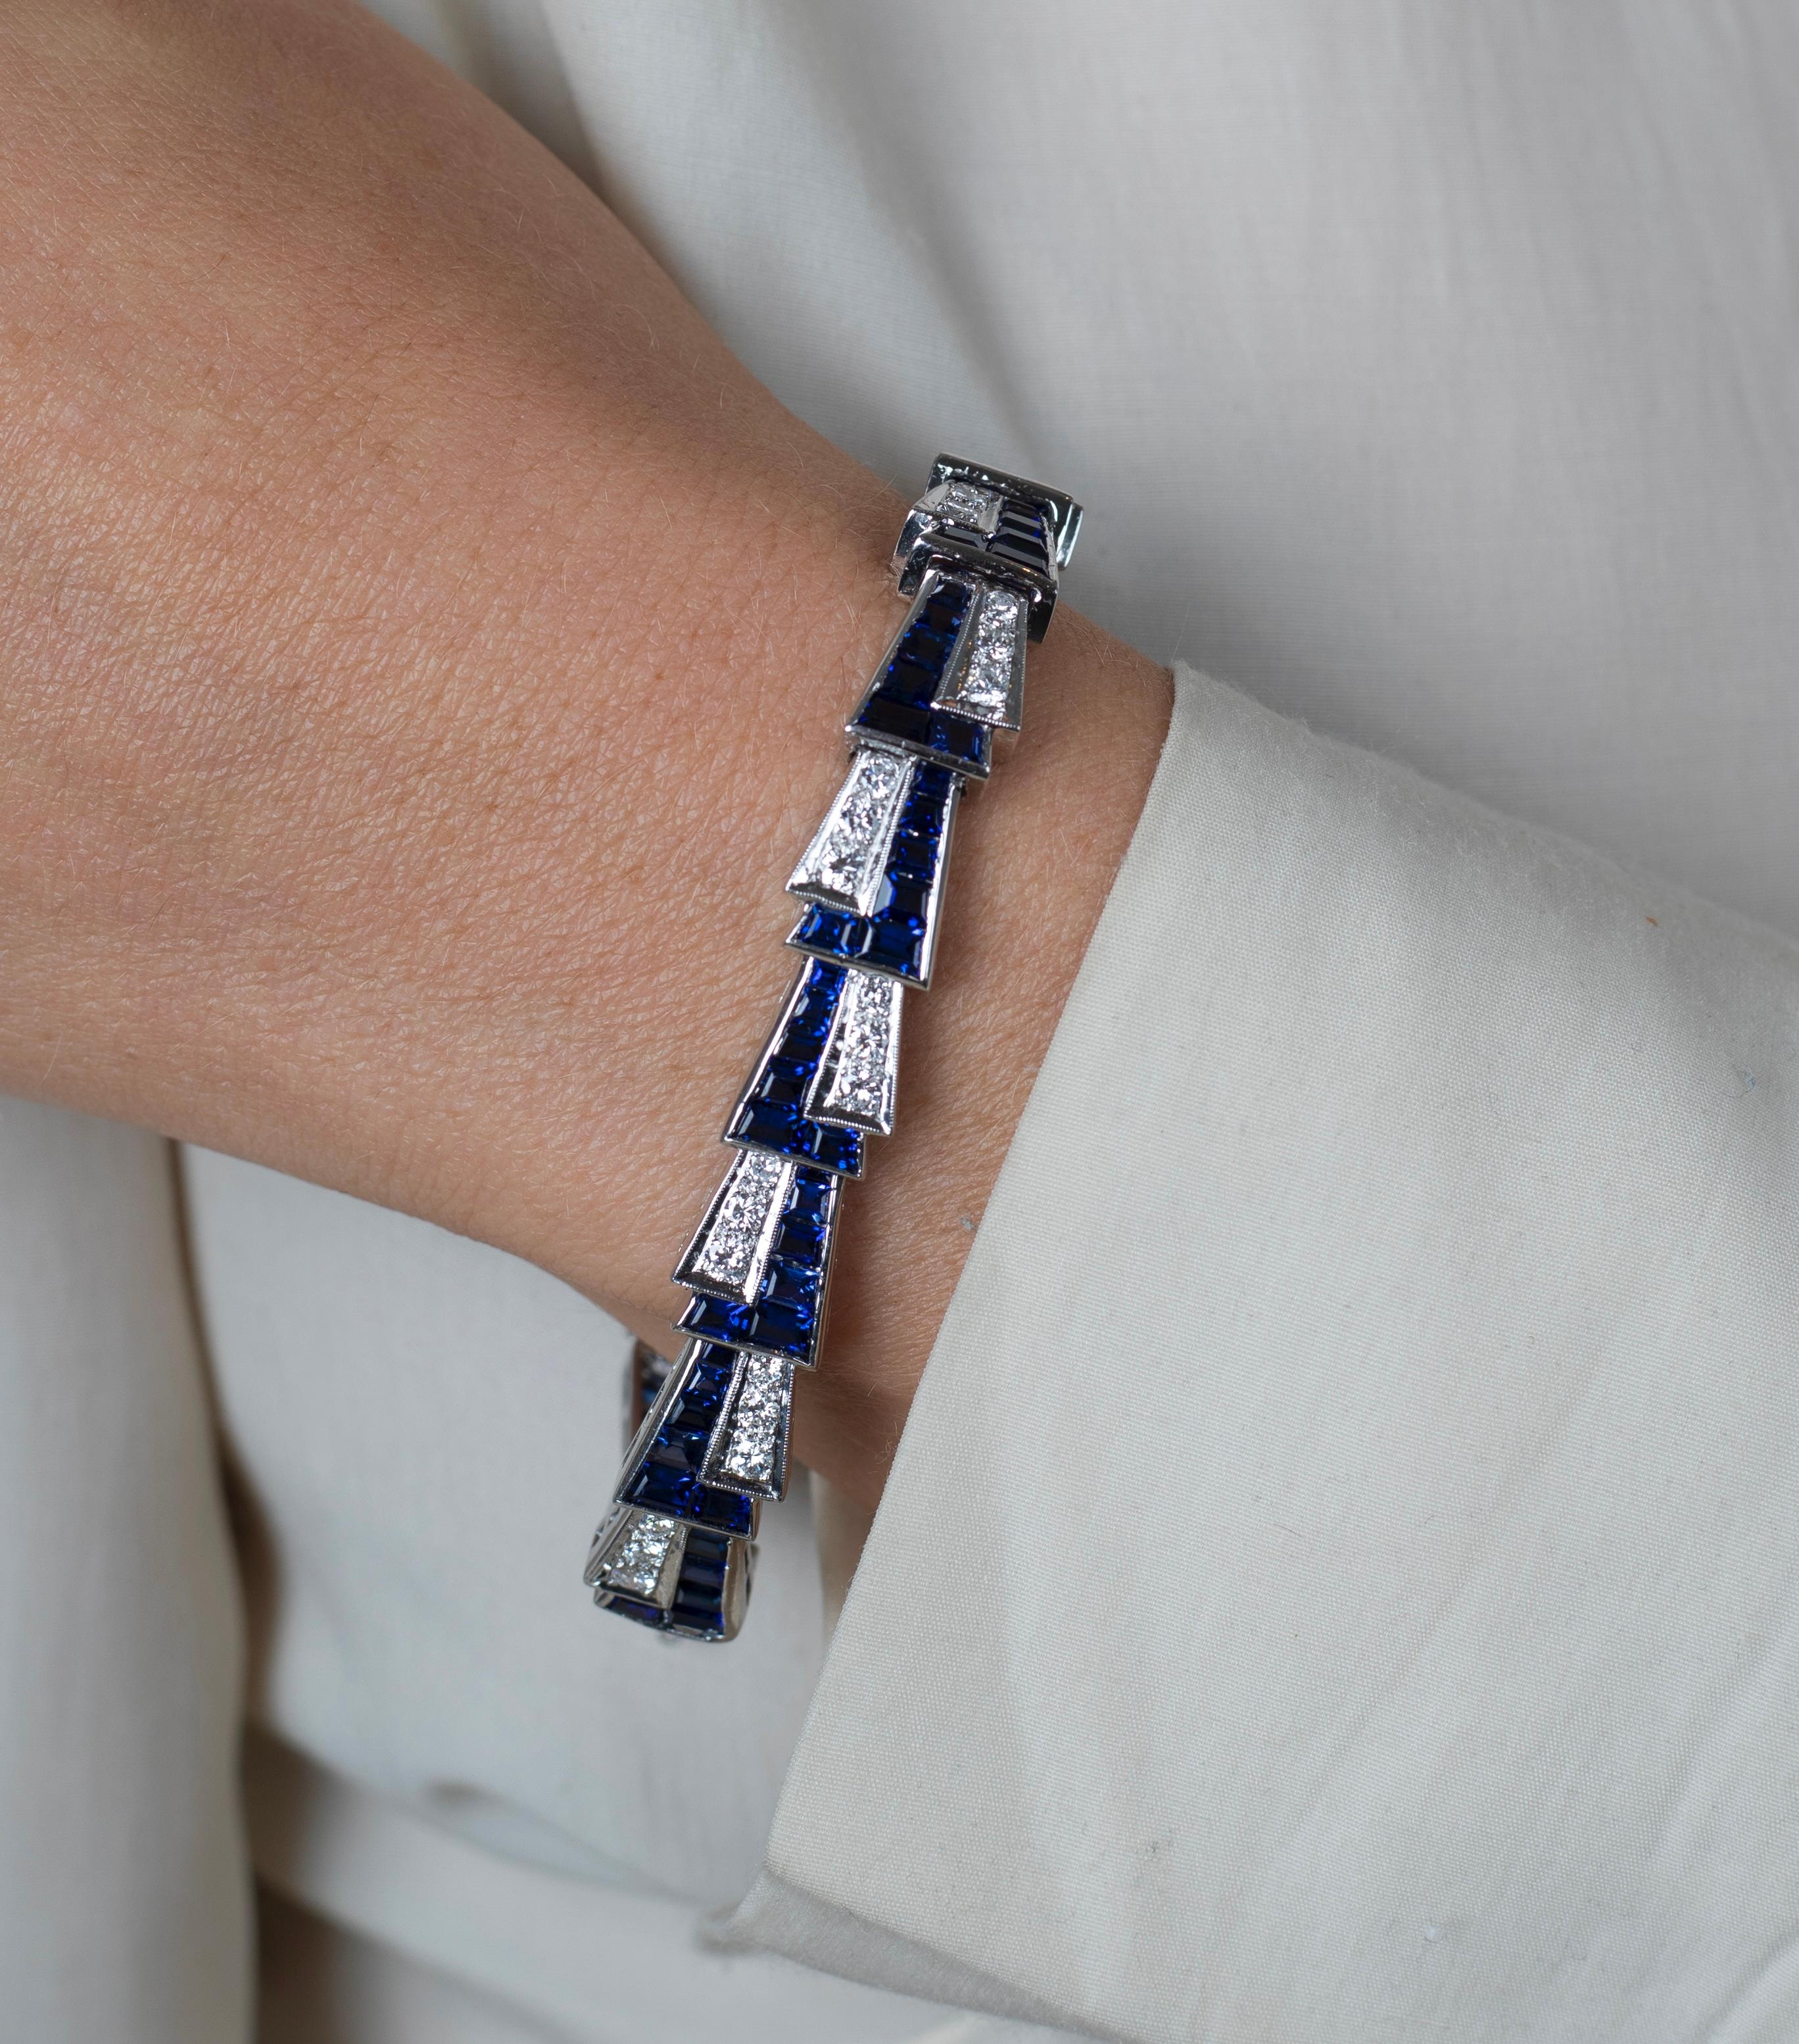 Wir präsentieren ein Vintage-Armband aus Platin mit 19 Karat Gesamtgewicht aus einem blauen Saphir im Baguetteschliff und einem Diamanten im Rundschliff. Ein wahres Meisterwerk der Symmetrie, das Eleganz und Raffinesse ausstrahlt. Dieses Armband mit